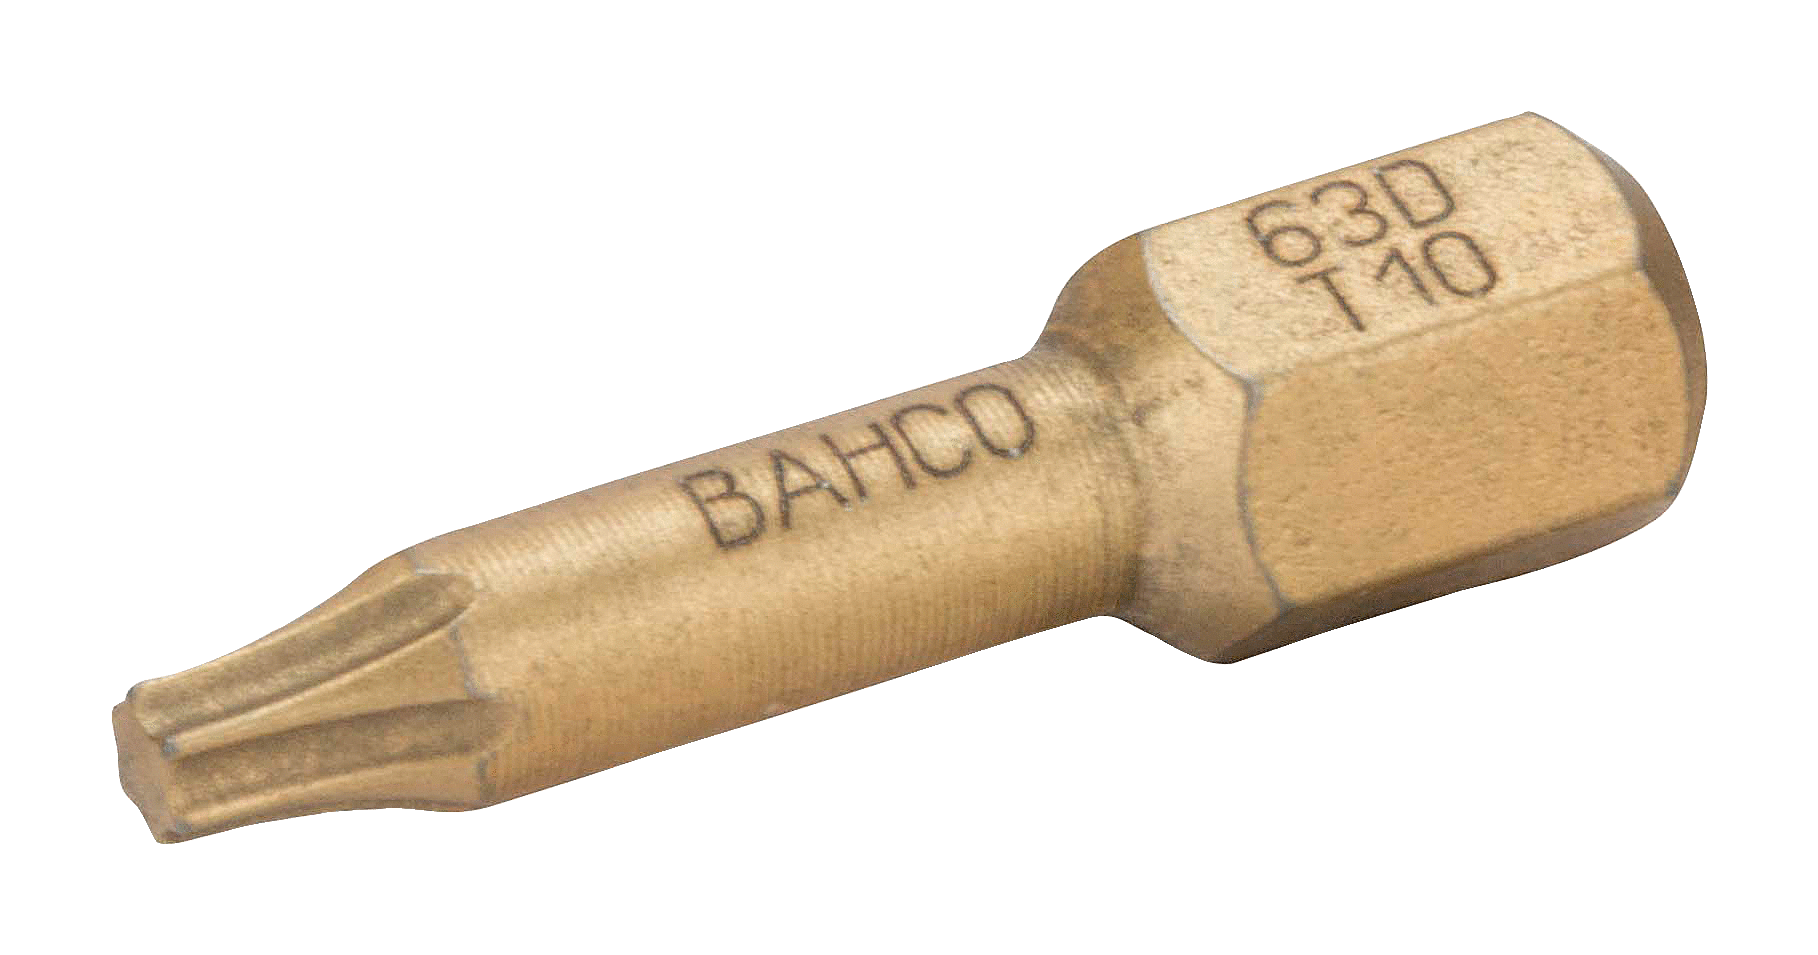 картинка Алмазные биты для отверток Torx®, 25 мм BAHCO 63D/T30-2P от магазина "Элит-инструмент"